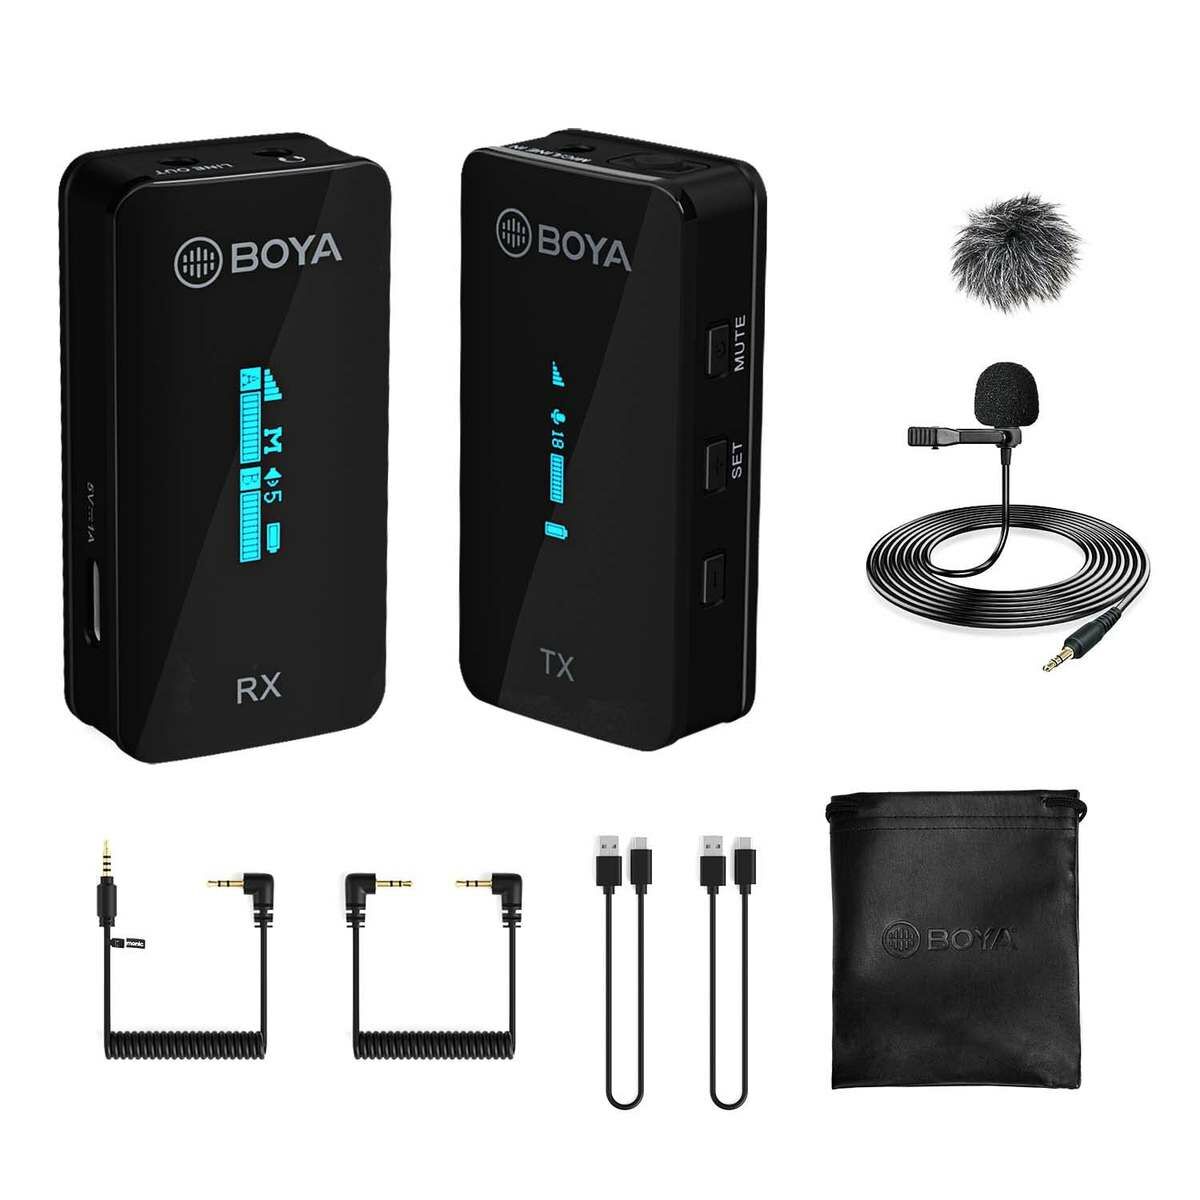 Kép 1/2 - BOYA ultra-kompakt vezeték nélküli mikrofon szett OLED kijelzővel kamerához, okostelefonhoz (3.5mm Jack TRS/TRRScsatlakozás), fekete EU